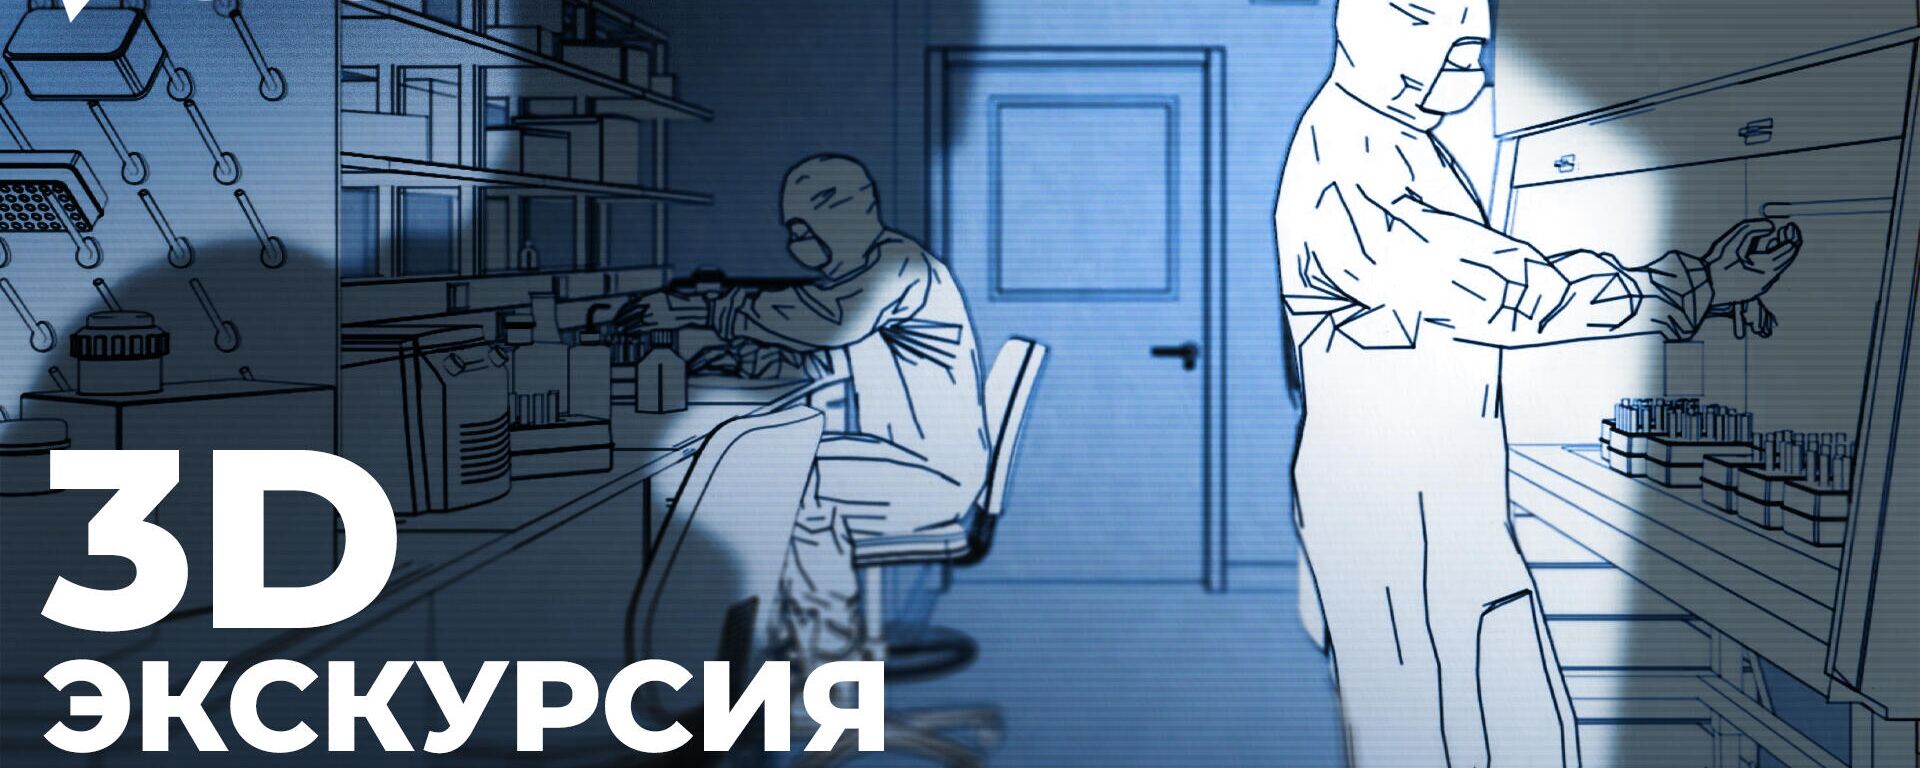 Все об испытаниях США на пациентах психбольницы в Харькове за 4 минуты. Видео - Sputnik Latvija, 1920, 24.04.2022